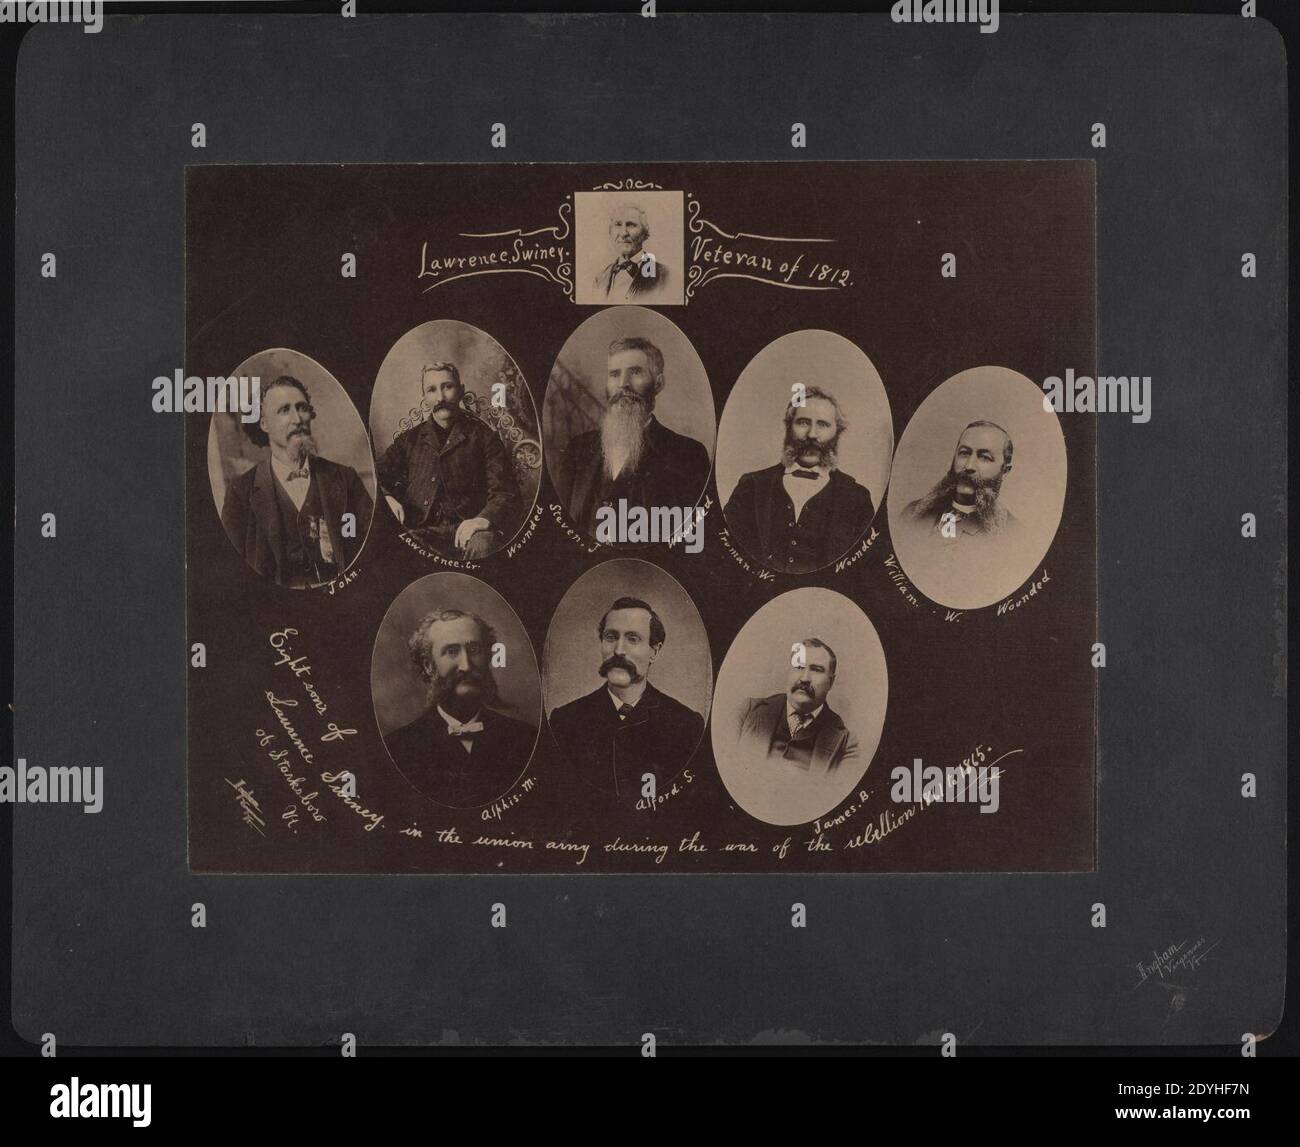 Lawrence Swiney (d. h. Swinyer), Veteran von 1812 acht Söhnen von Lawrence Swiney (d. h. Swinyer) von Starksboro, Vt., in der Union Armee während des Krieges der Rebellion 1861 bis 1865 - - Ingham, Stockfoto